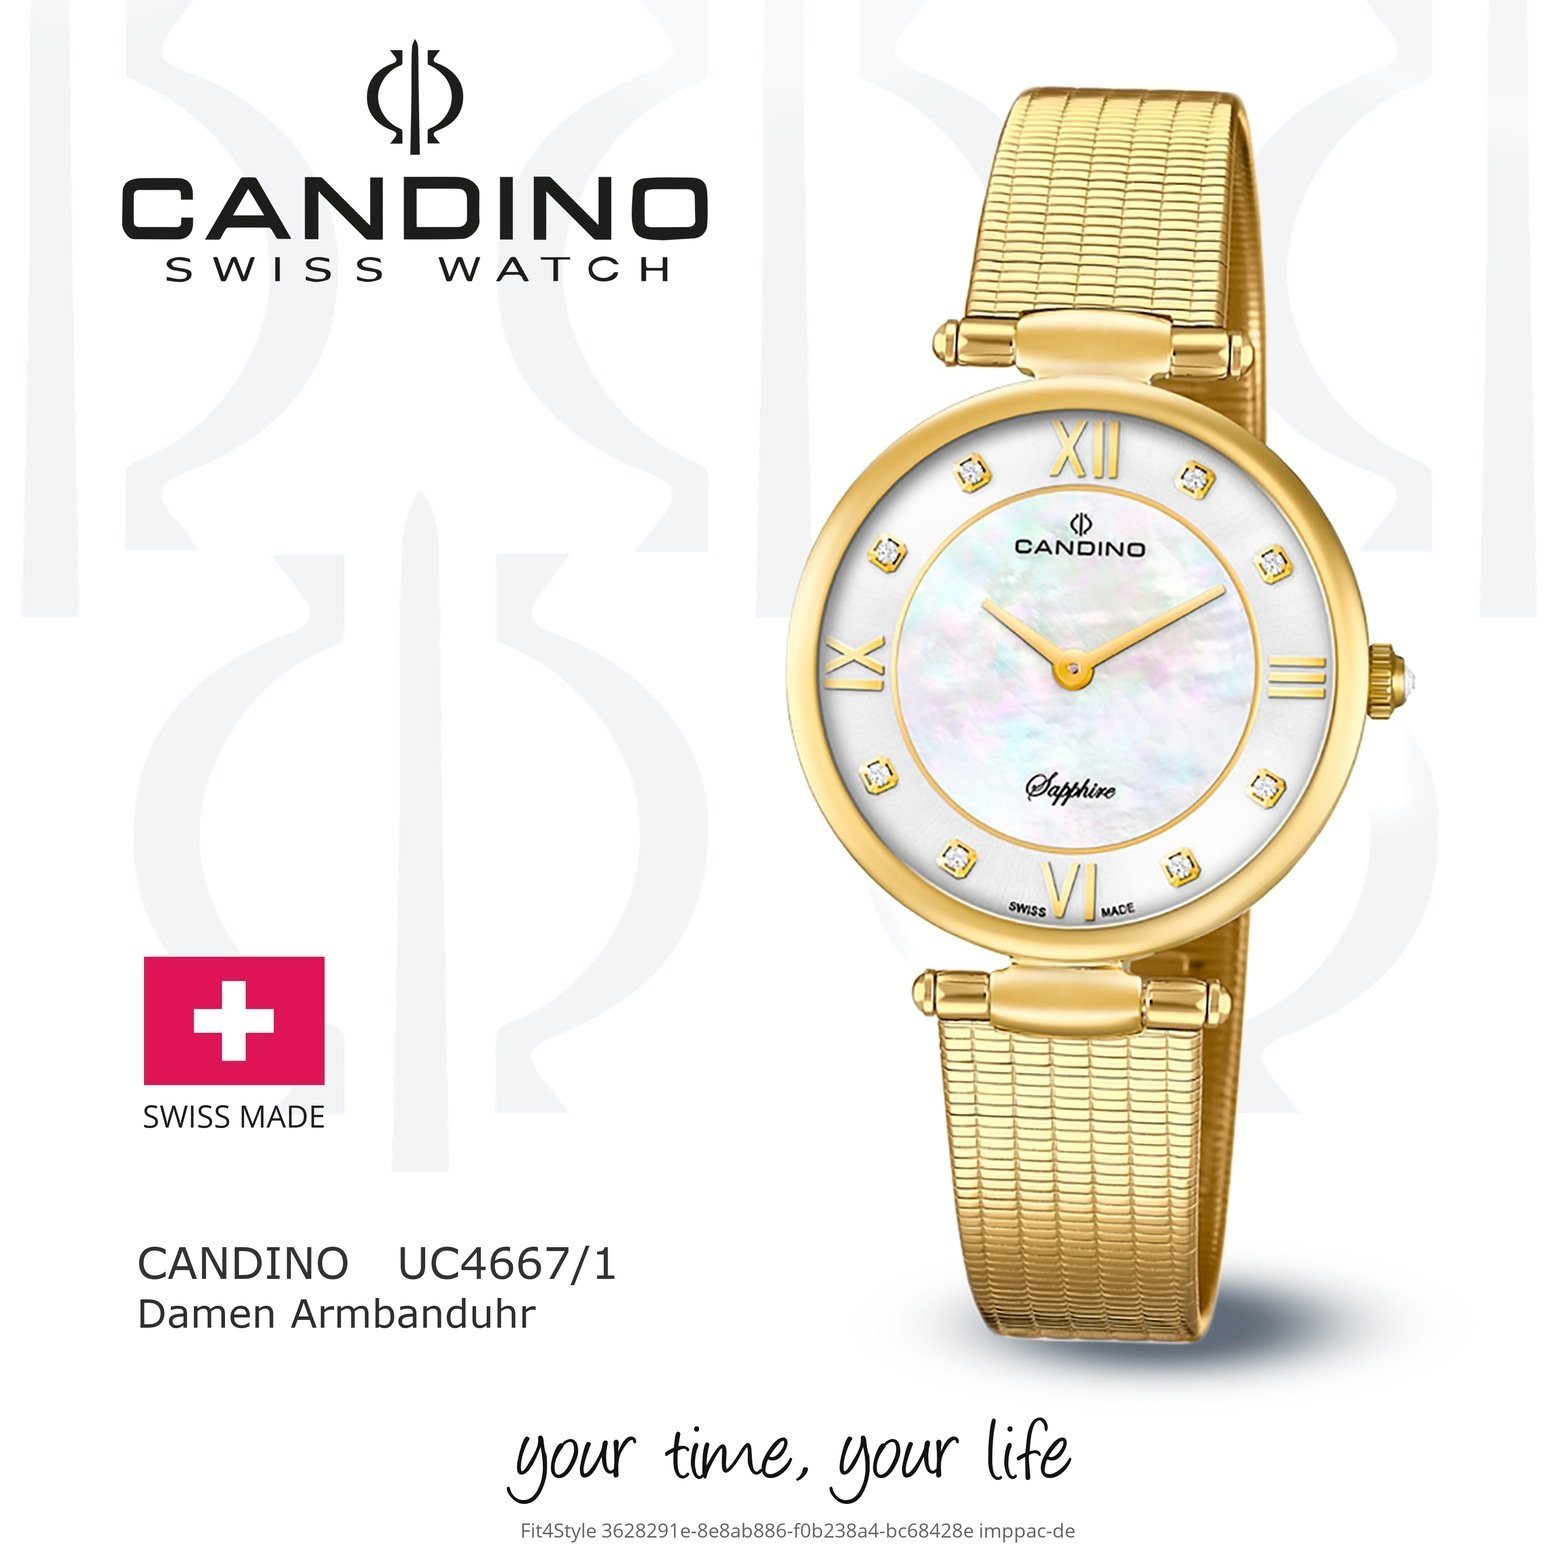 Candino Quarzuhr Fashion Edelstahlarmband rund, Quarzwerk Candino C4667/1, gold, Damen Uhr Armbanduhr Damen